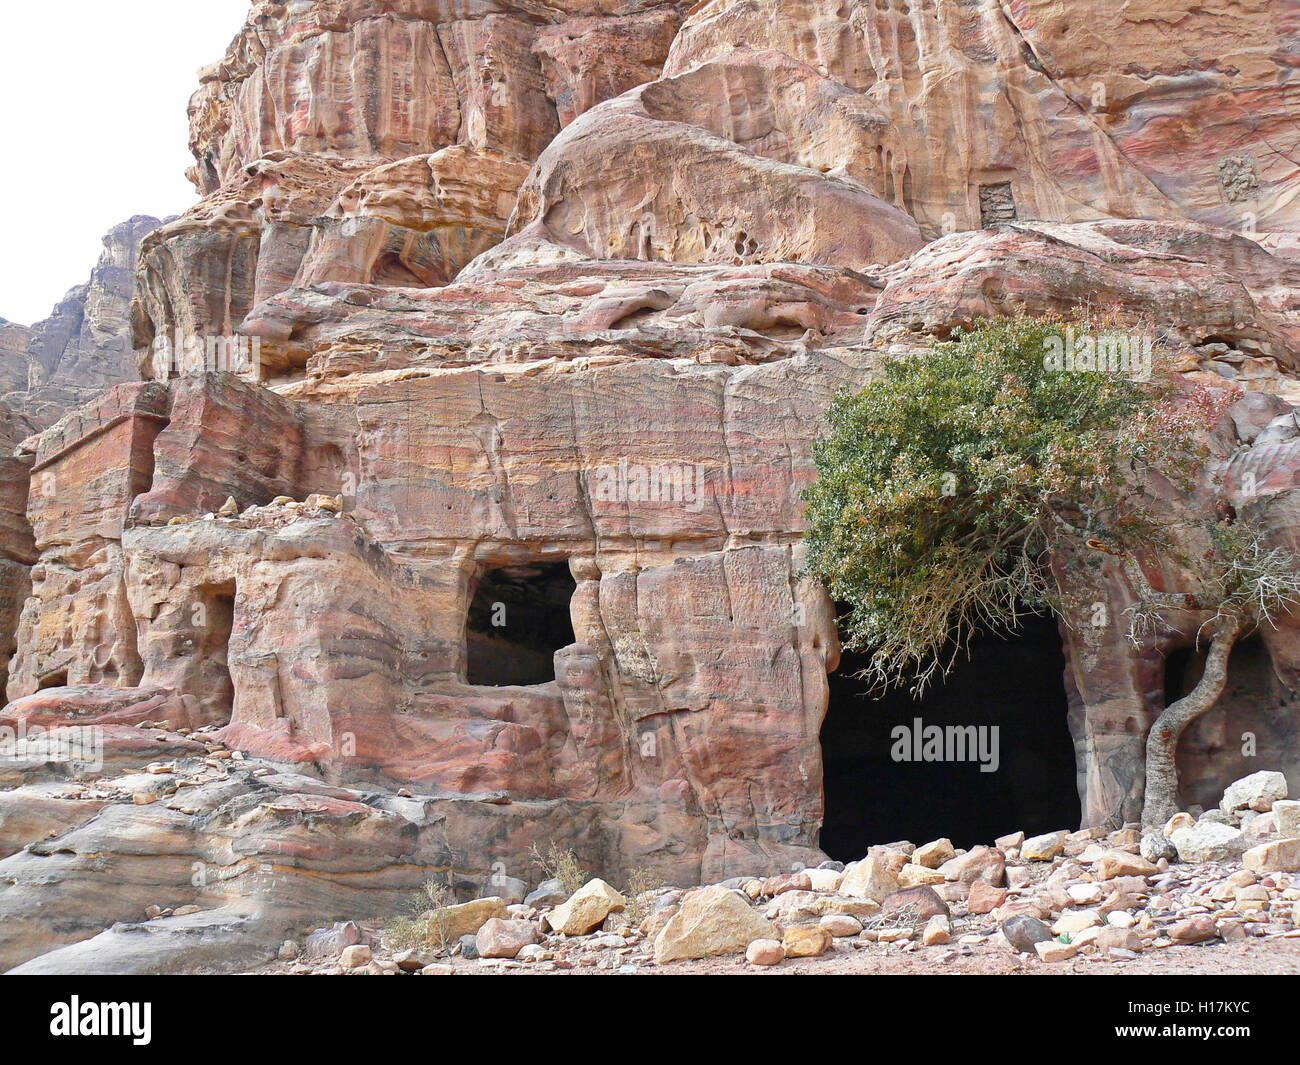 Tombs of Petra, Jordan Stock Photo